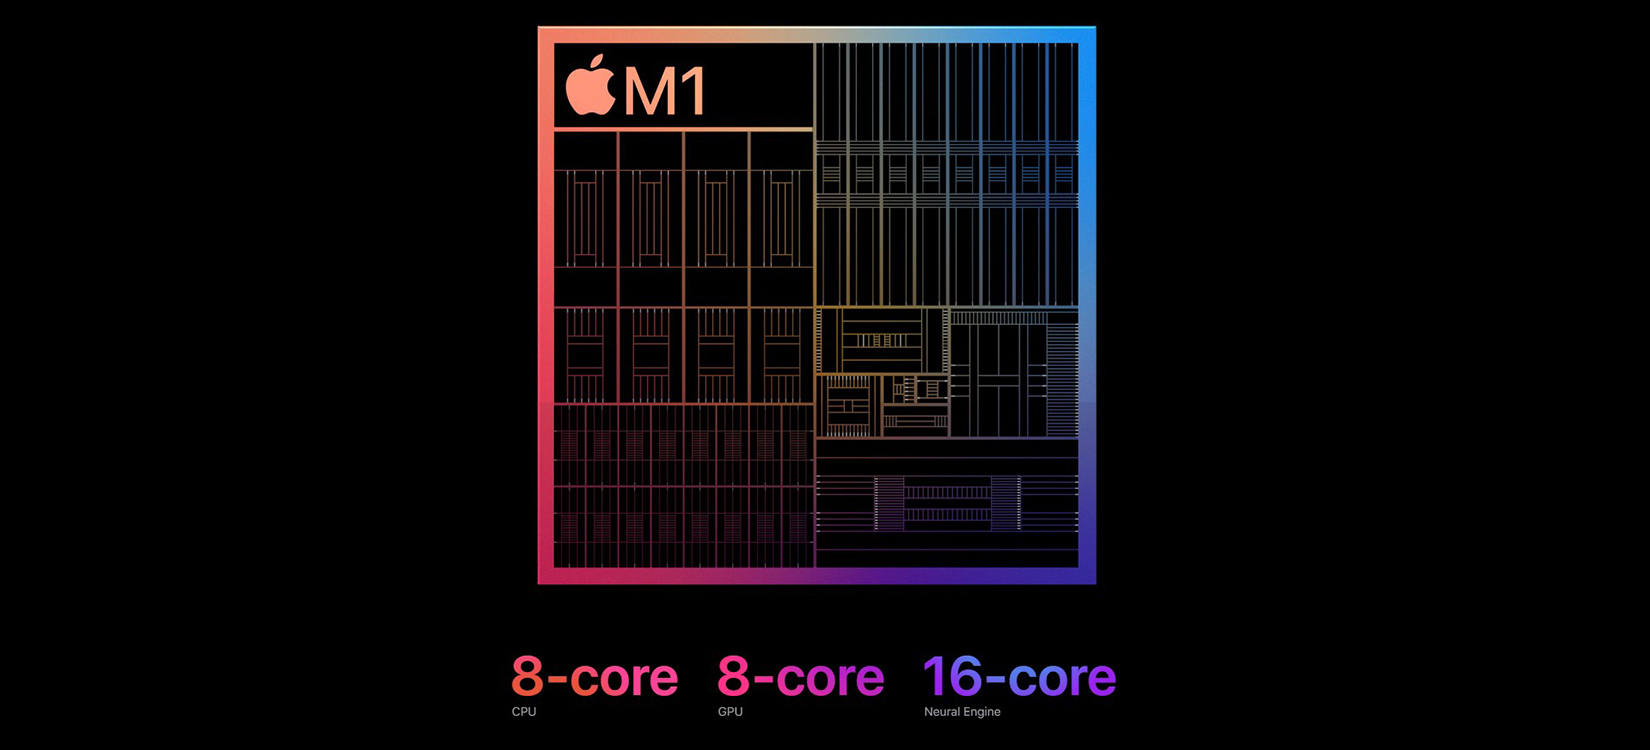 M1 - Chip xử lý thế hệ mới nhất của Apple